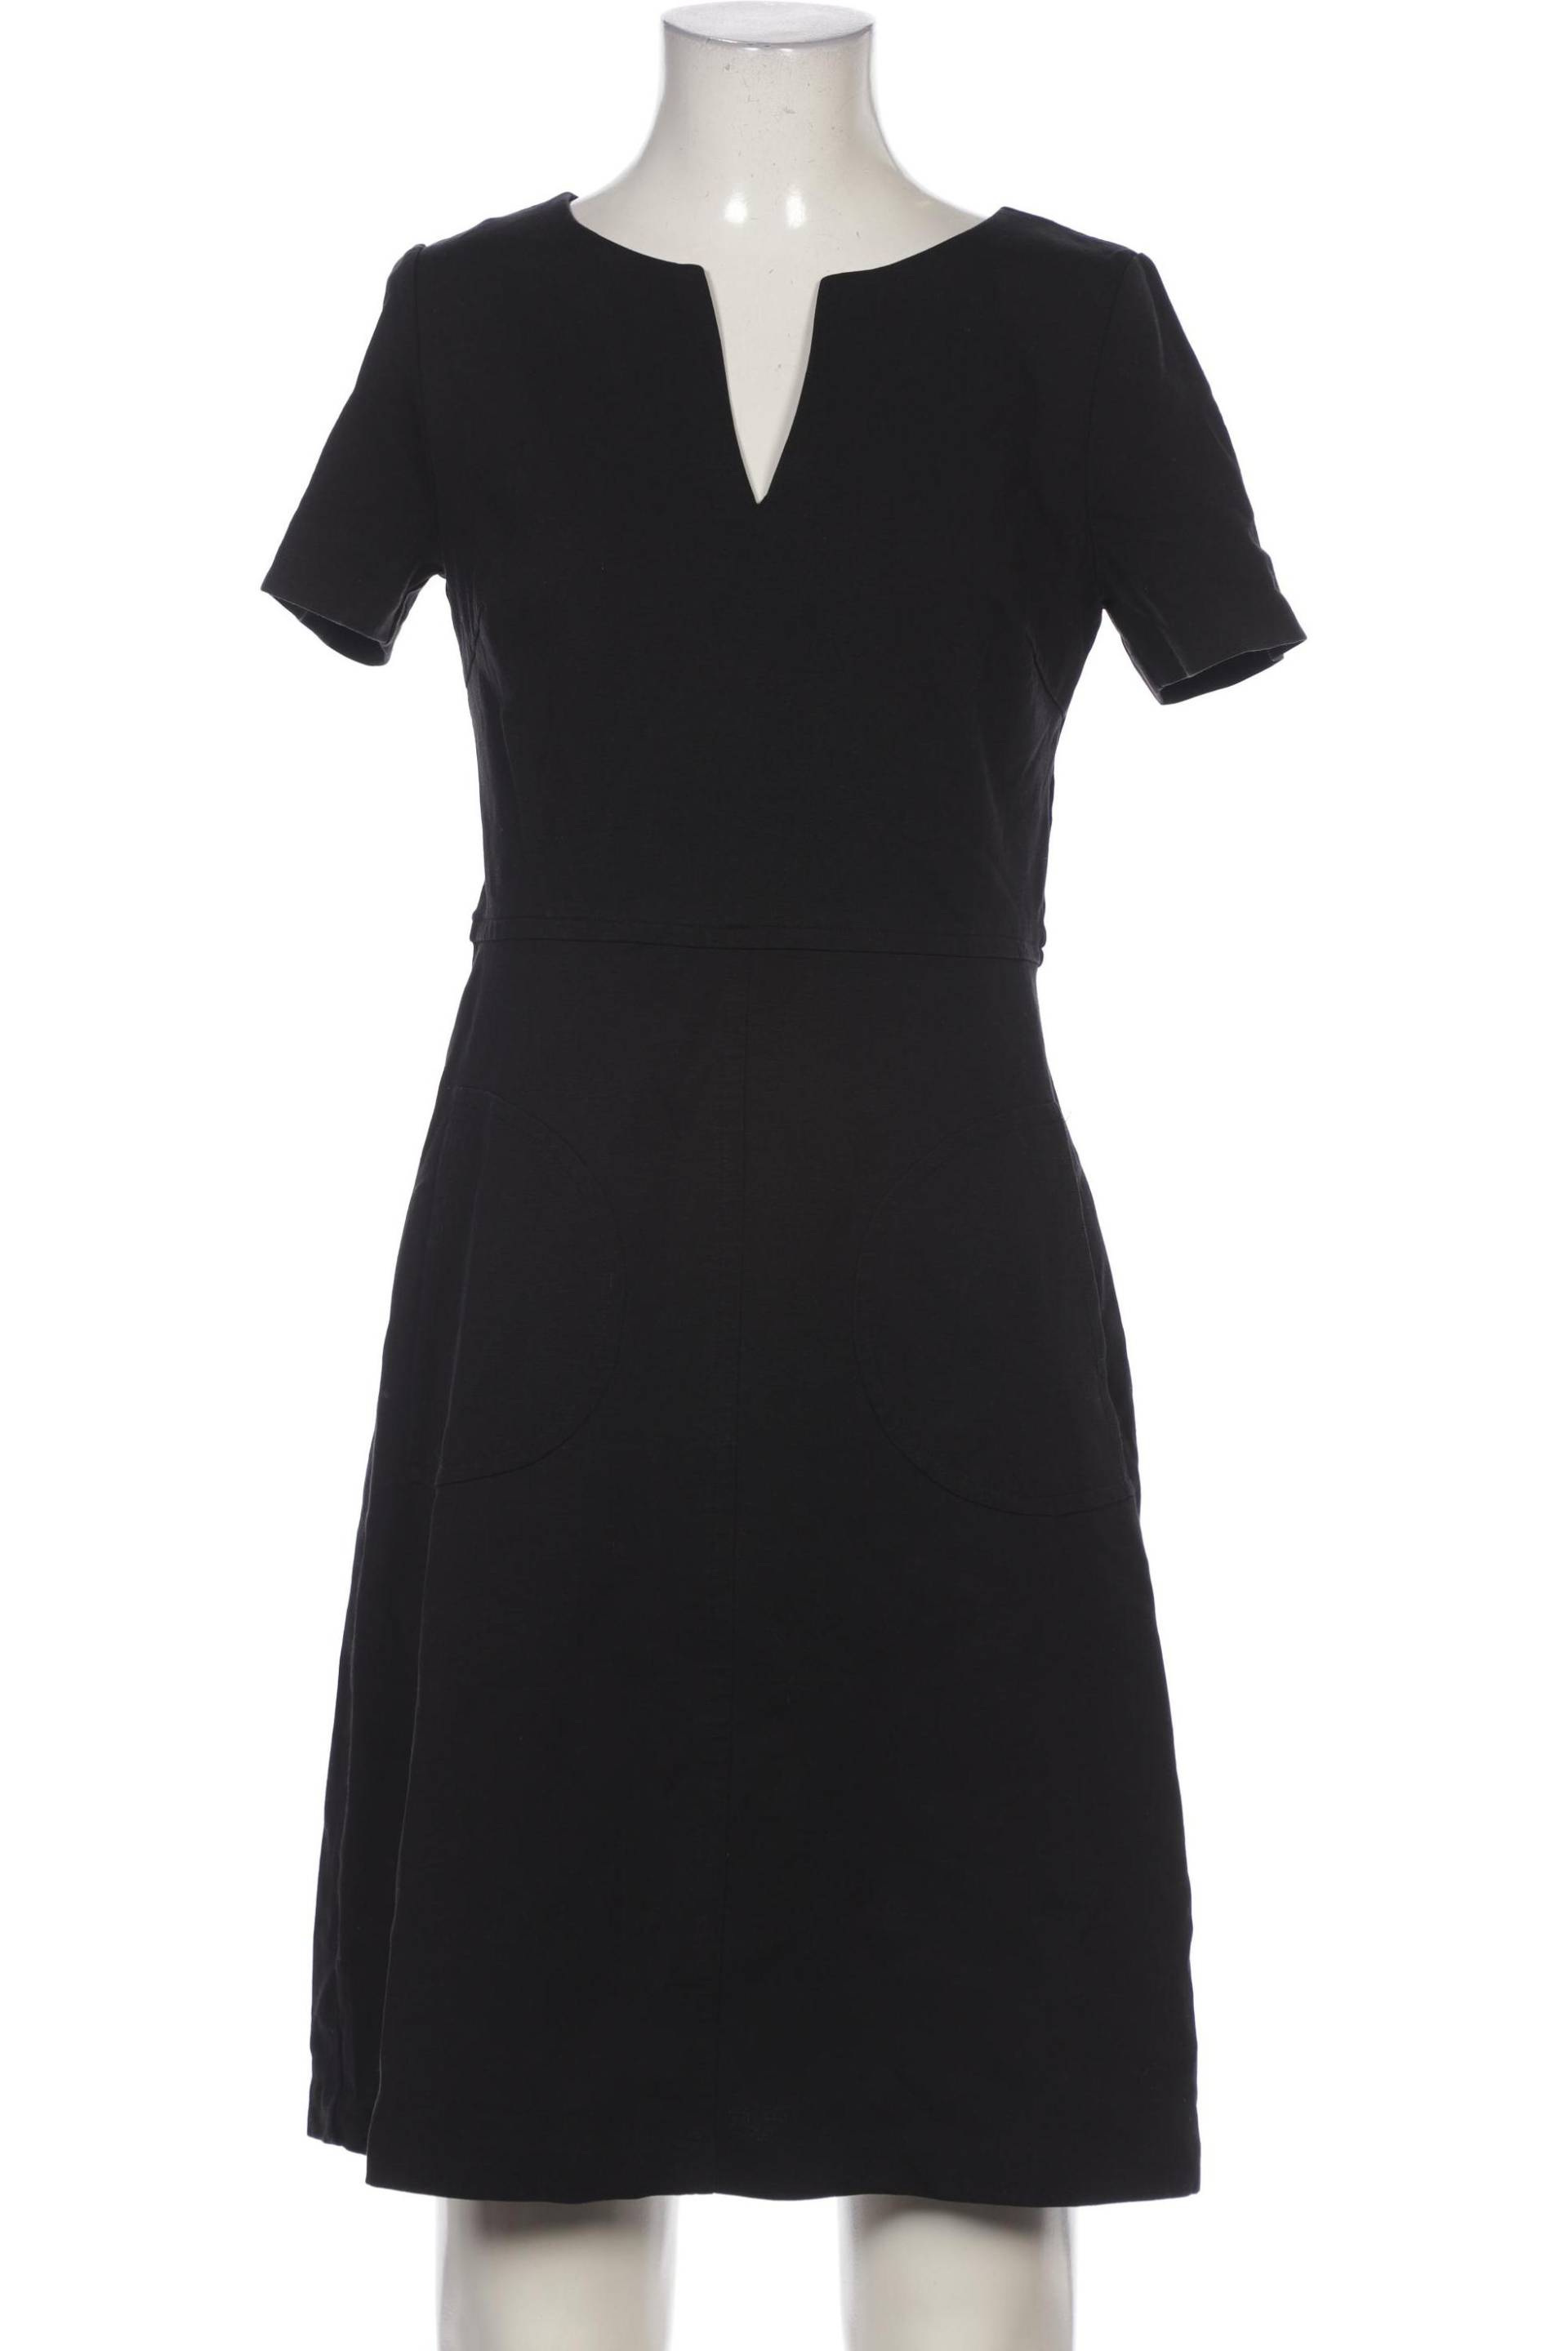 Boden Damen Kleid, schwarz, Gr. 38 von Boden